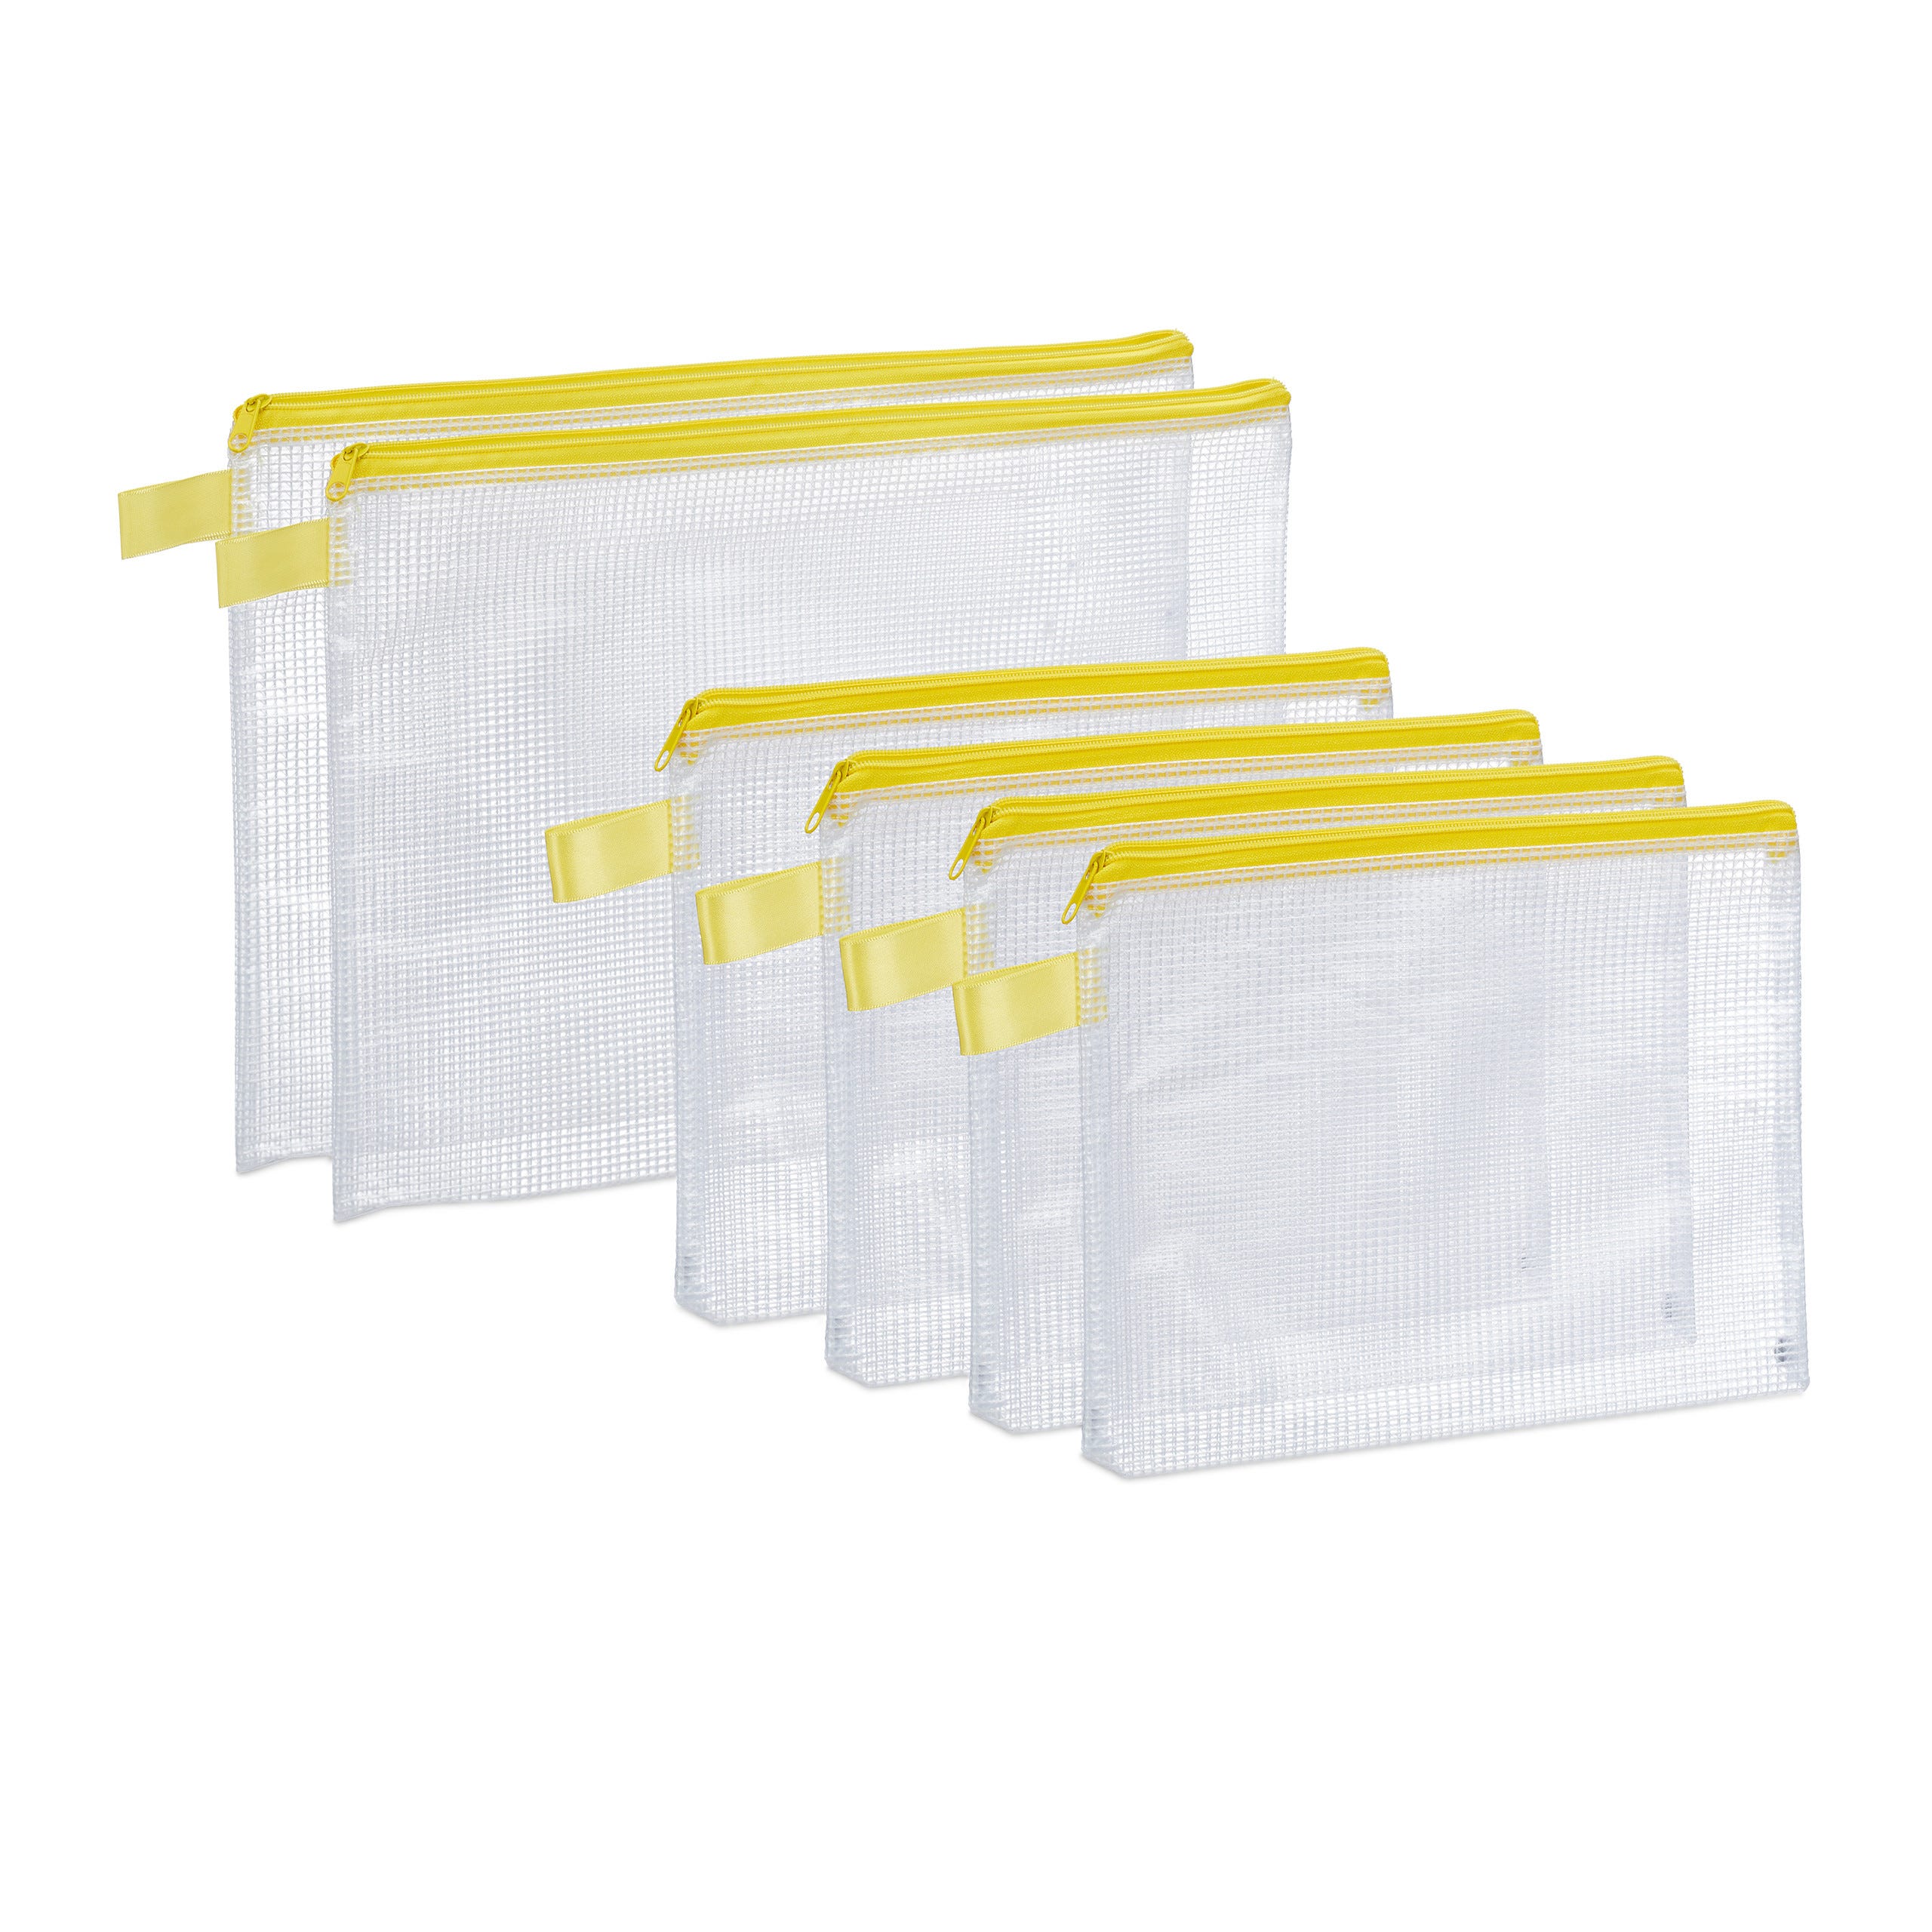 Relaxdays Chemise document transparente pochette fermeture éclaire porte-document  bureau A4 A5 6 pièces, jaune